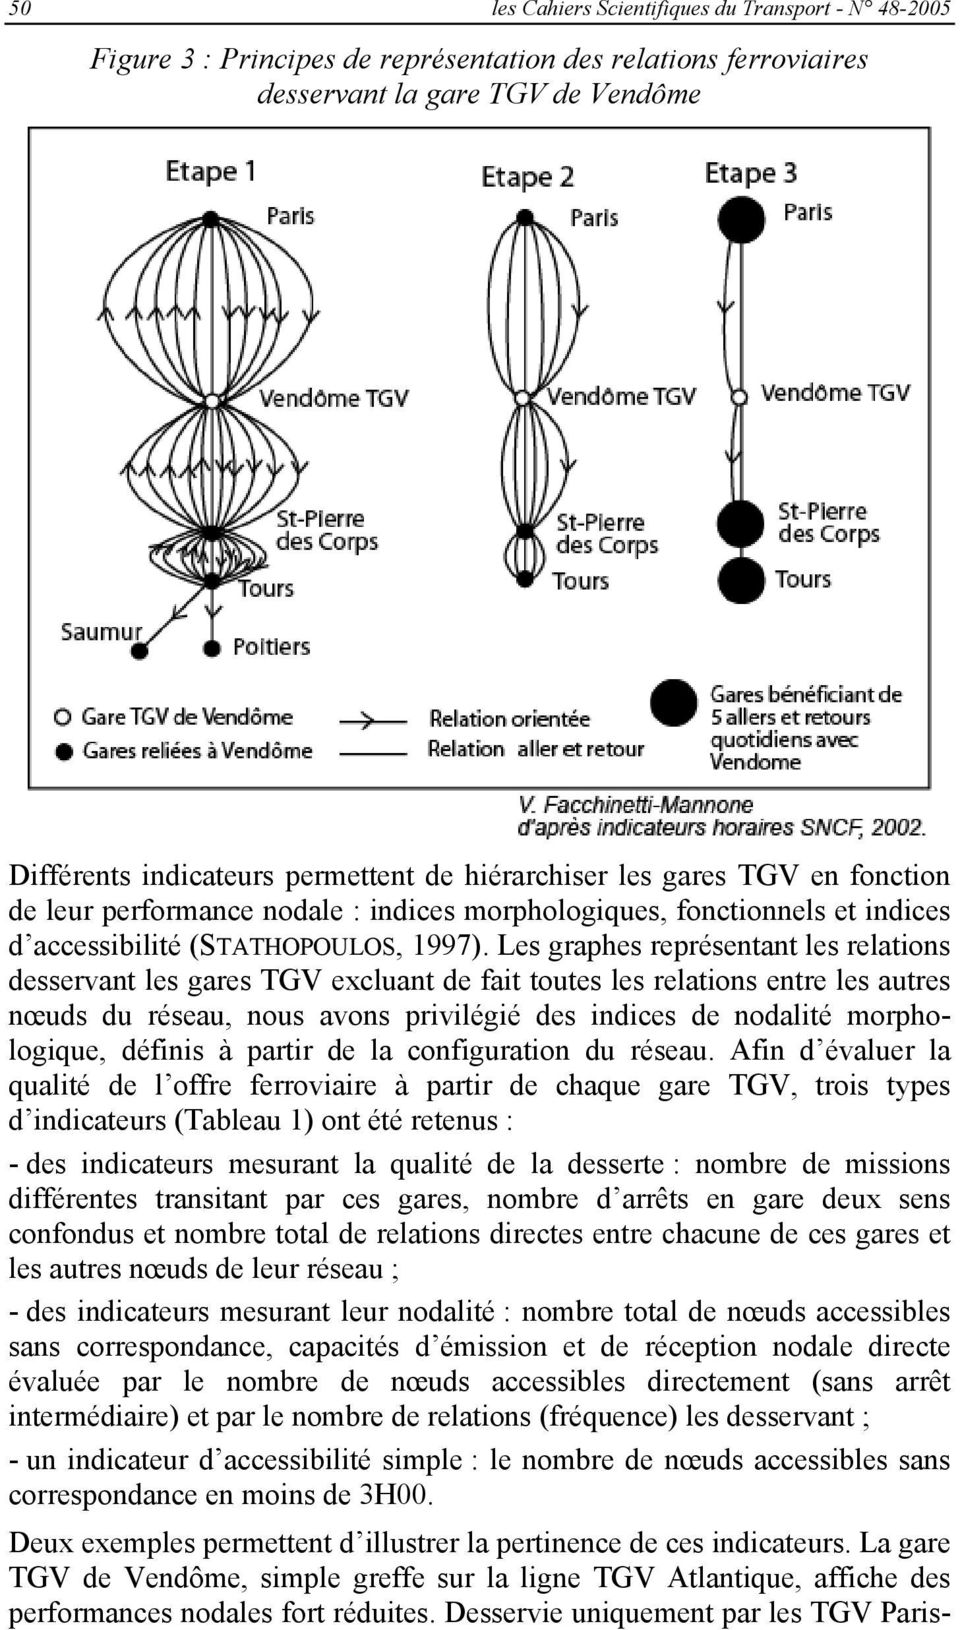 Les graphes représentant les relations desservant les gares TGV excluant de fait toutes les relations entre les autres nœuds du réseau, nous avons privilégié des indices de nodalité morphologique,